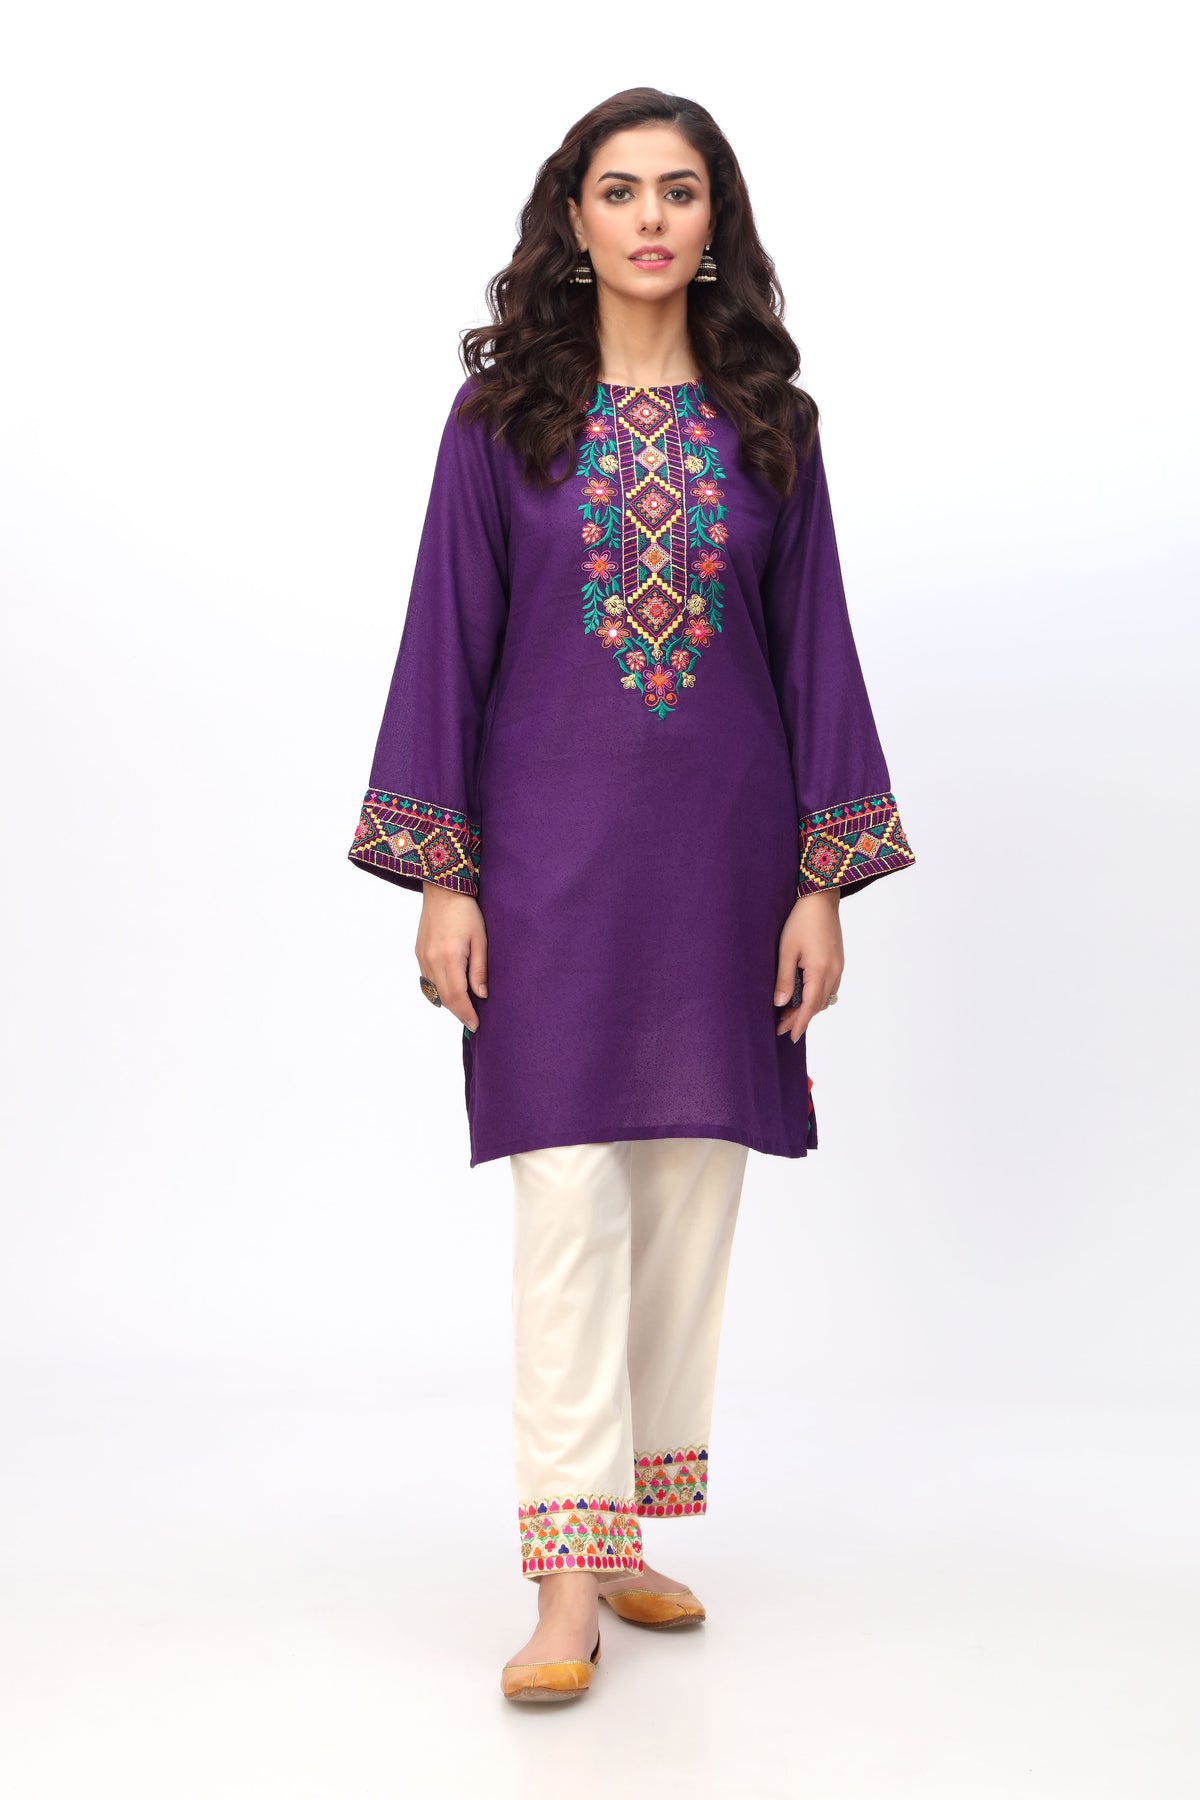 Phool Sheesha 2 in Purple coloured Lawn Karandi fabric